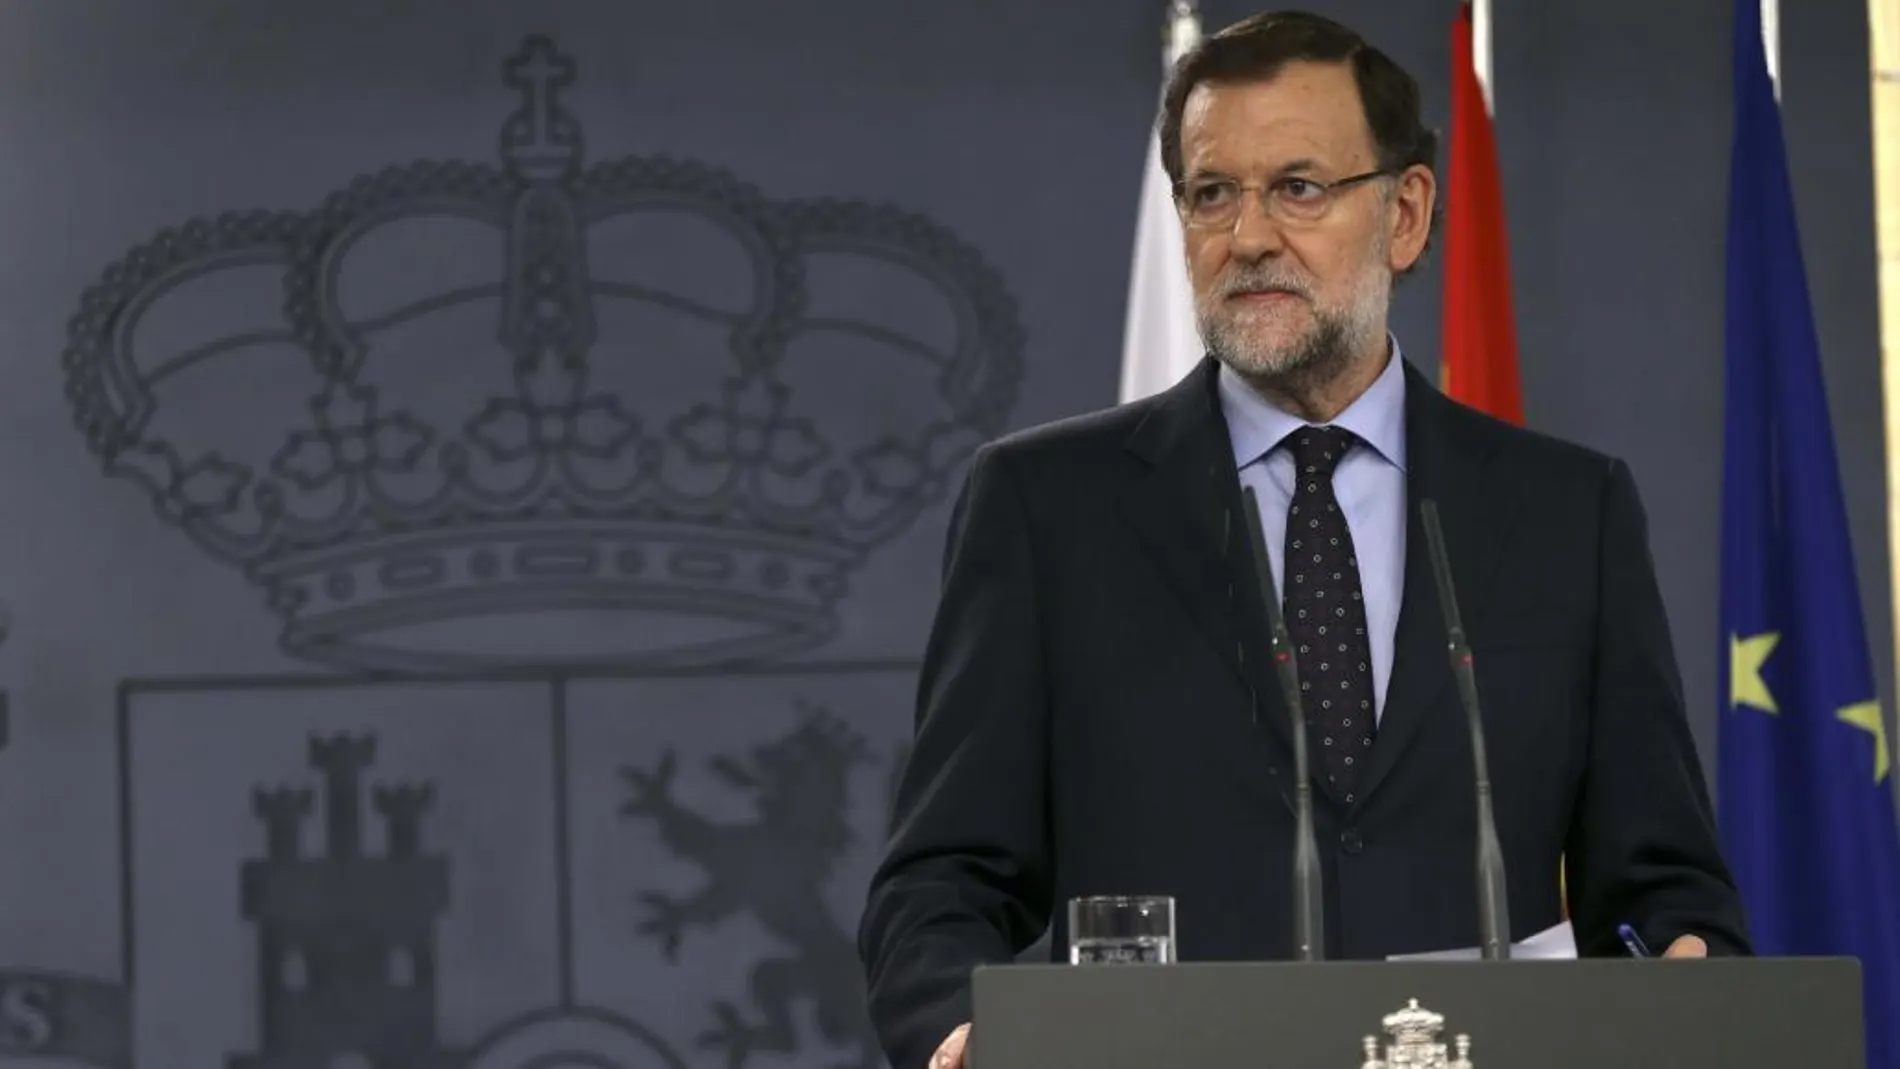 El presidente del Gobierno, Mariano Rajoy, durante la rueda de prensa que ofreció junto a la primera ministra de la República de Polonia, Ewa Kopacz, tras la XI cumbre entre ambos países